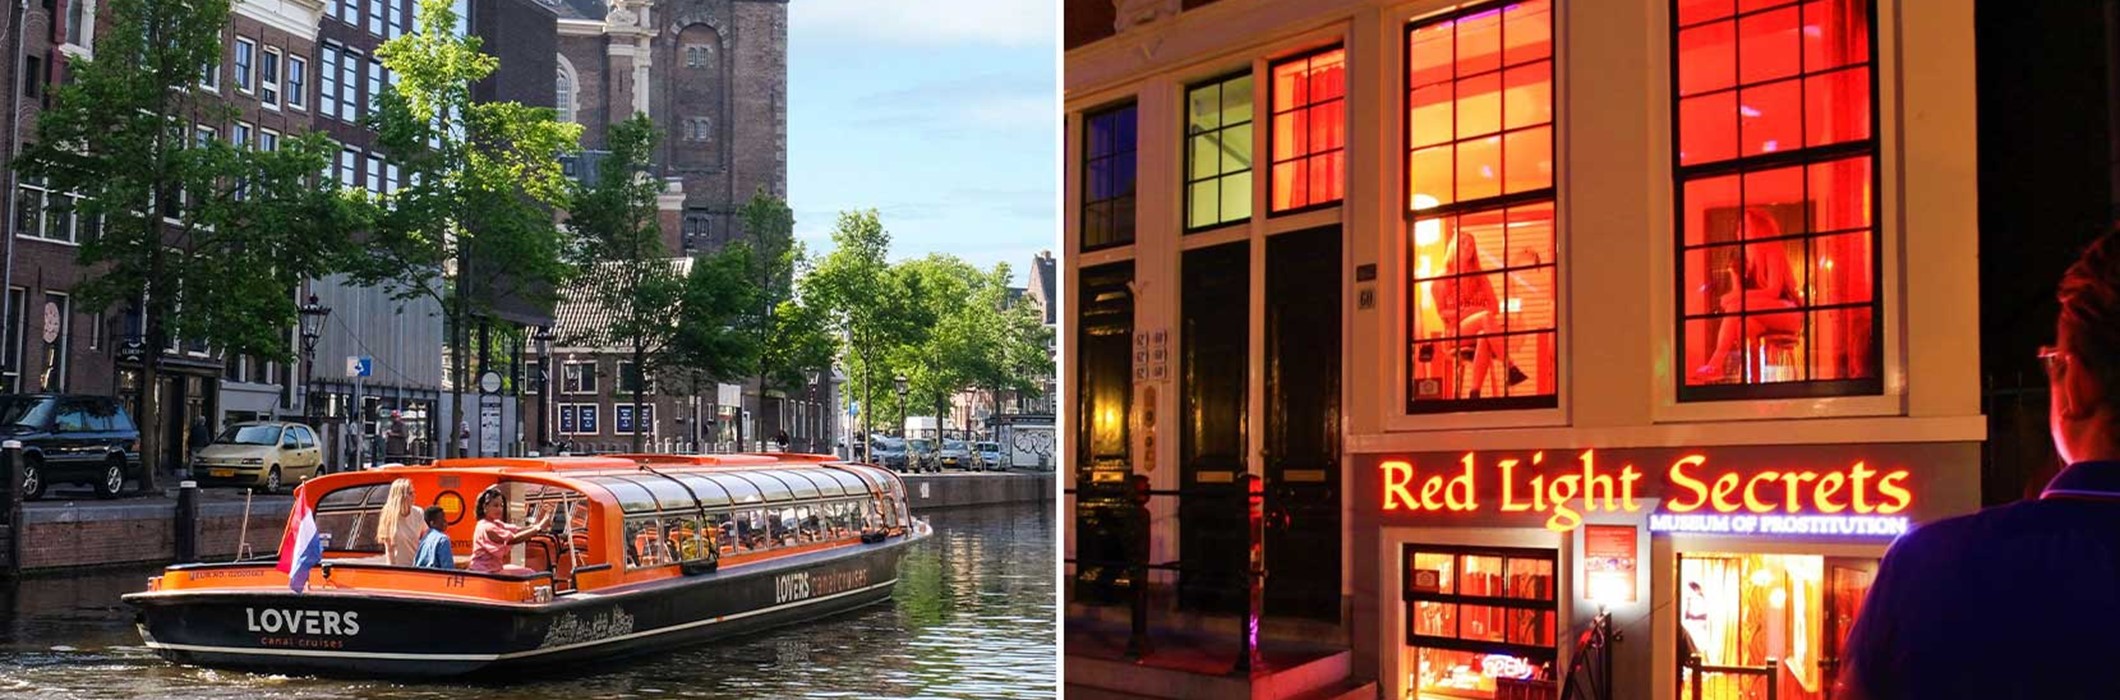 Red Light Secrets + Crucero por el canal de Ámsterdam